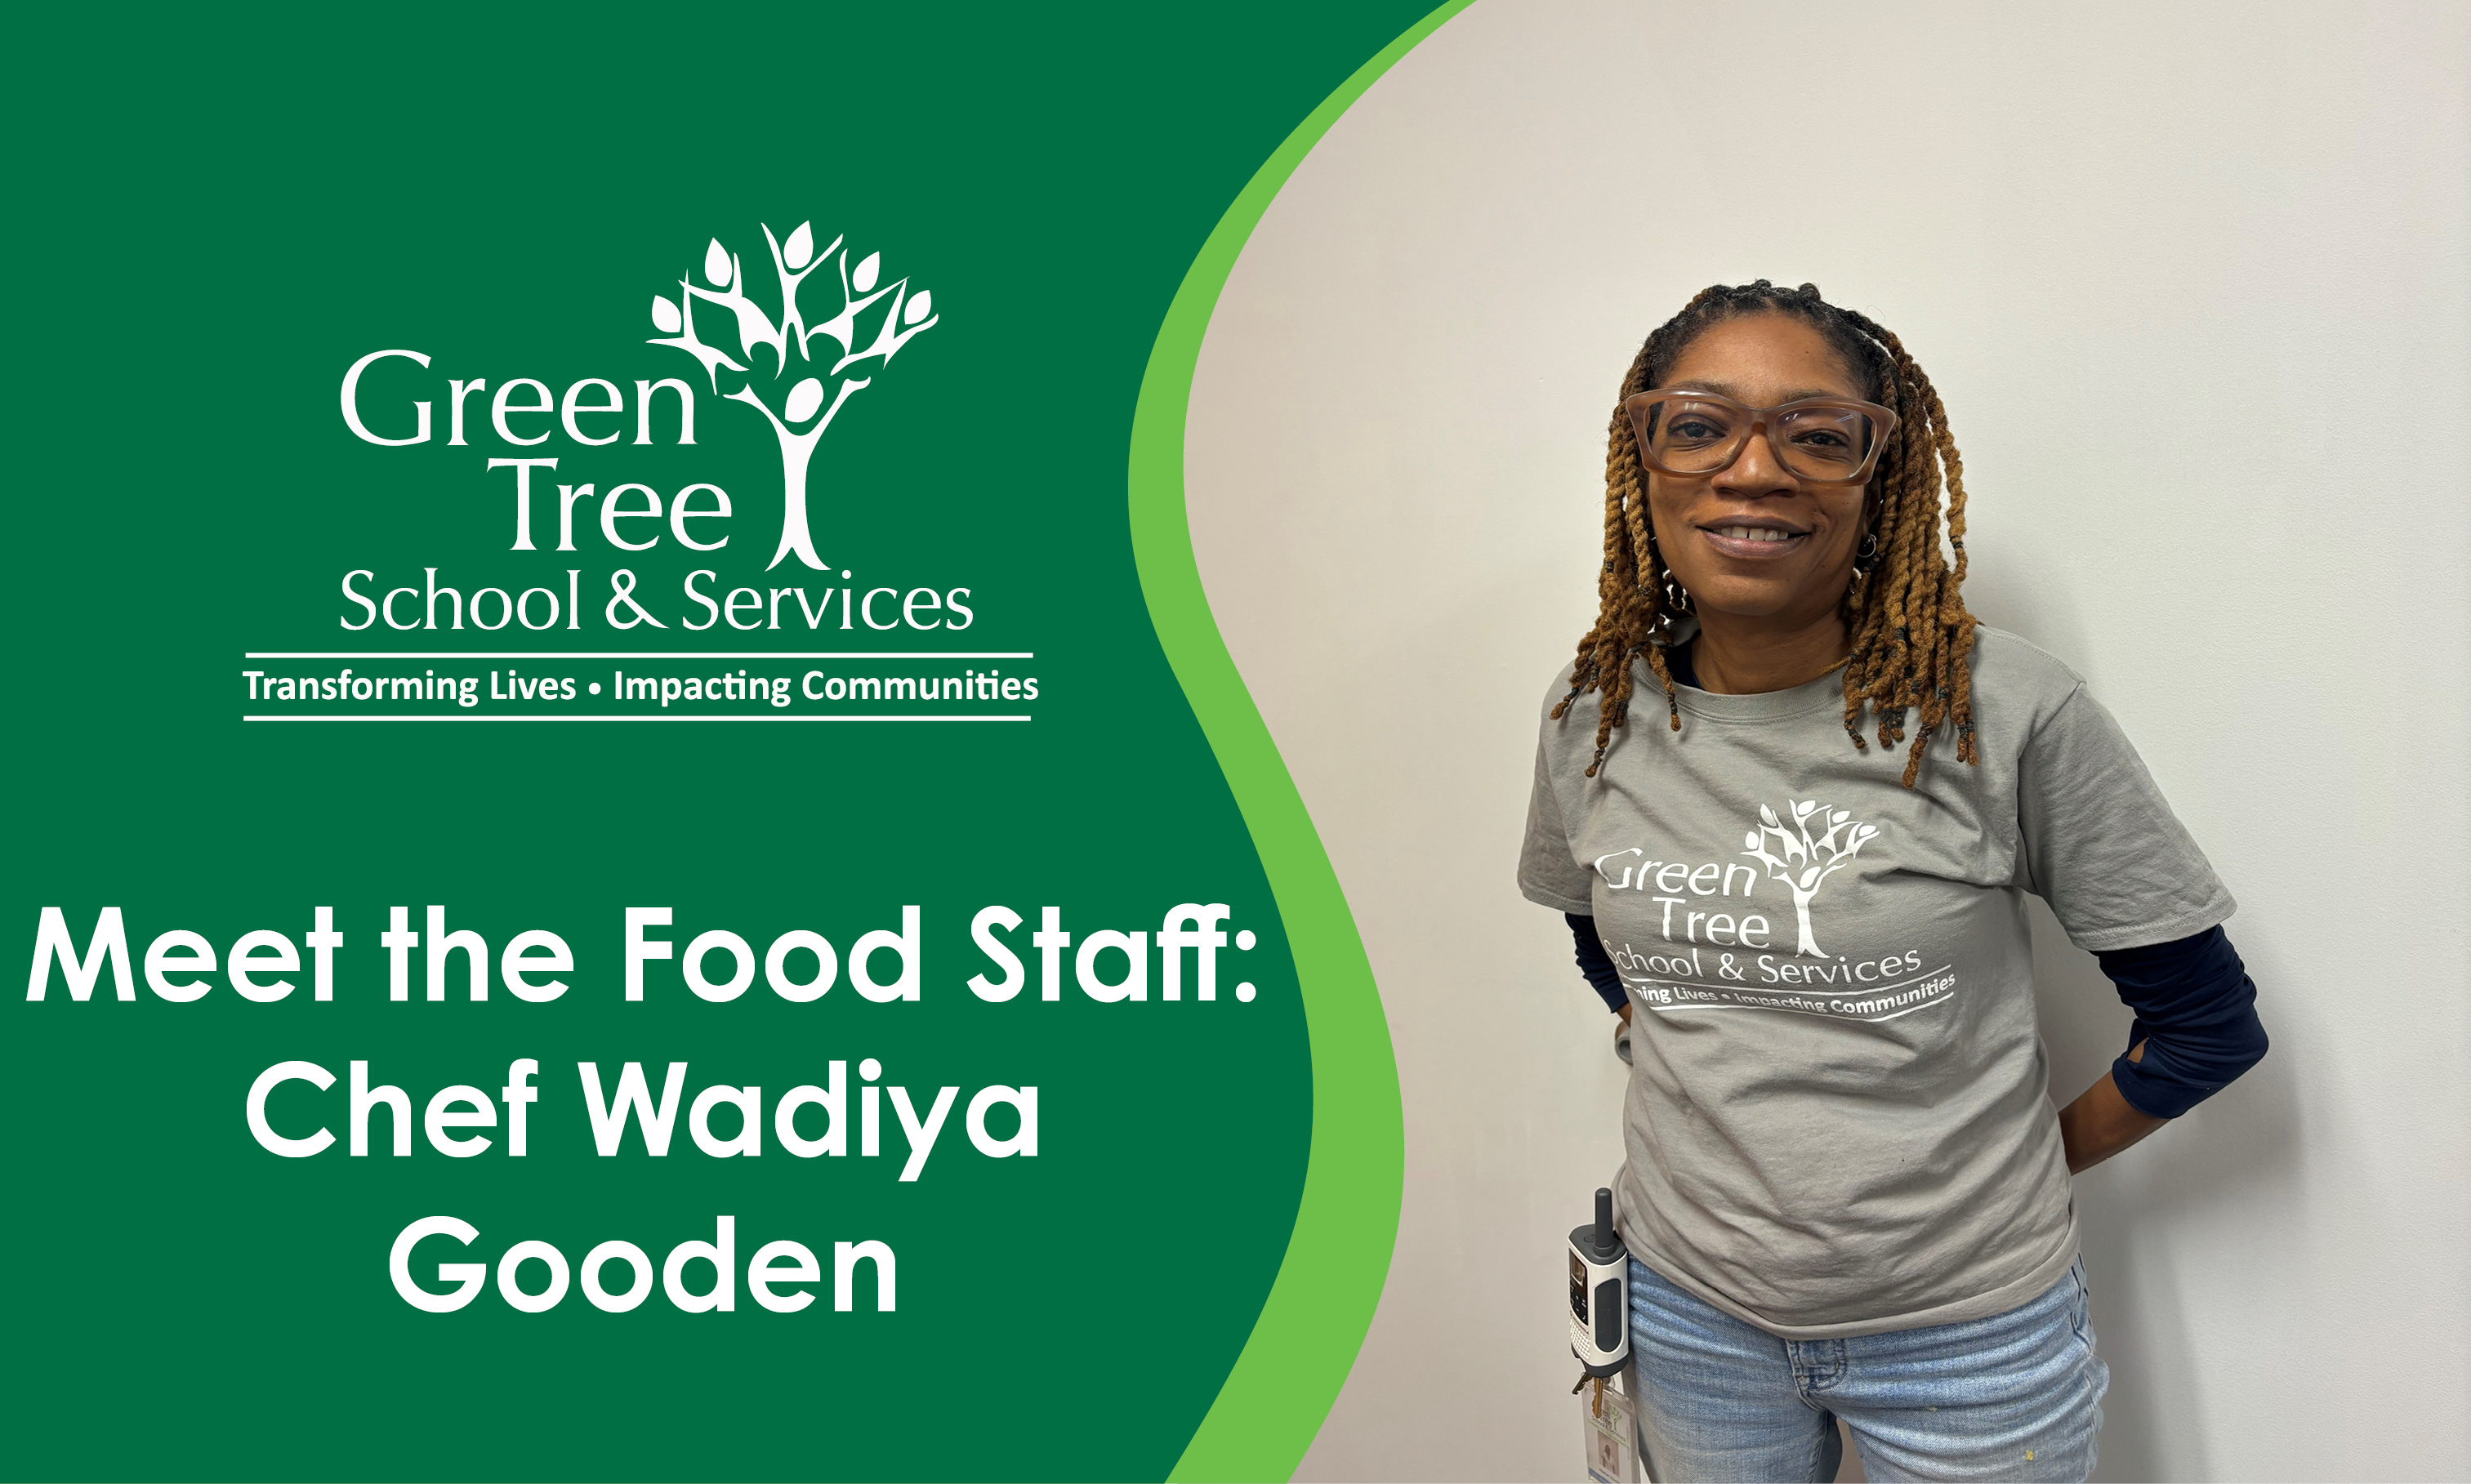 Meet the Food Staff: Chef Wadiya Gooden